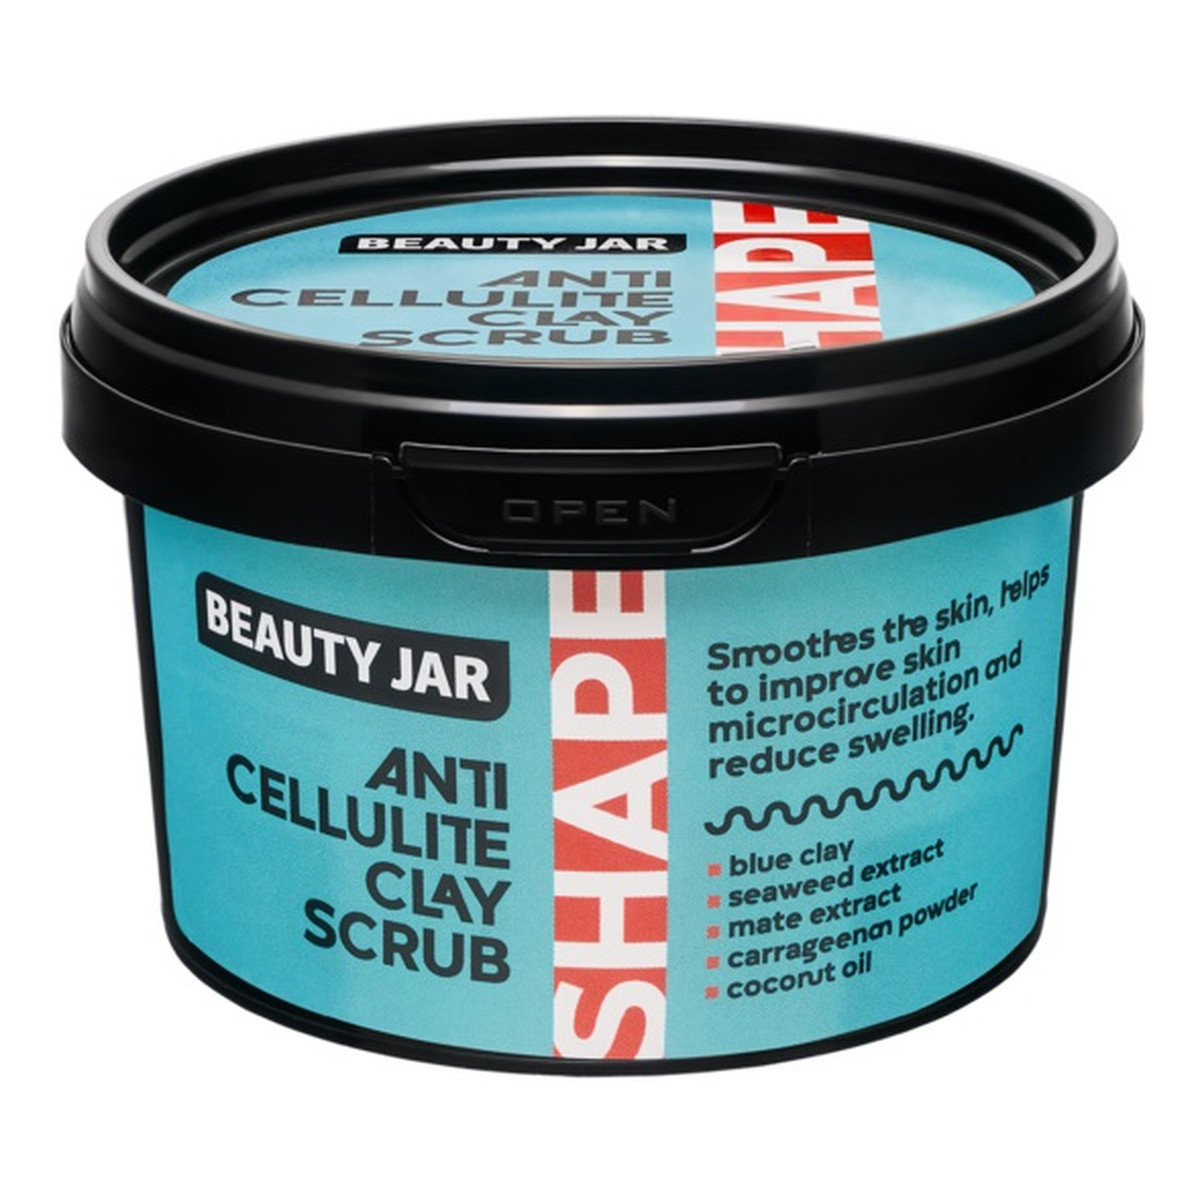 Beauty Jar Anti-Cellulite Clay Scrub antycellulitowy peeling z glinką do ciała 380g